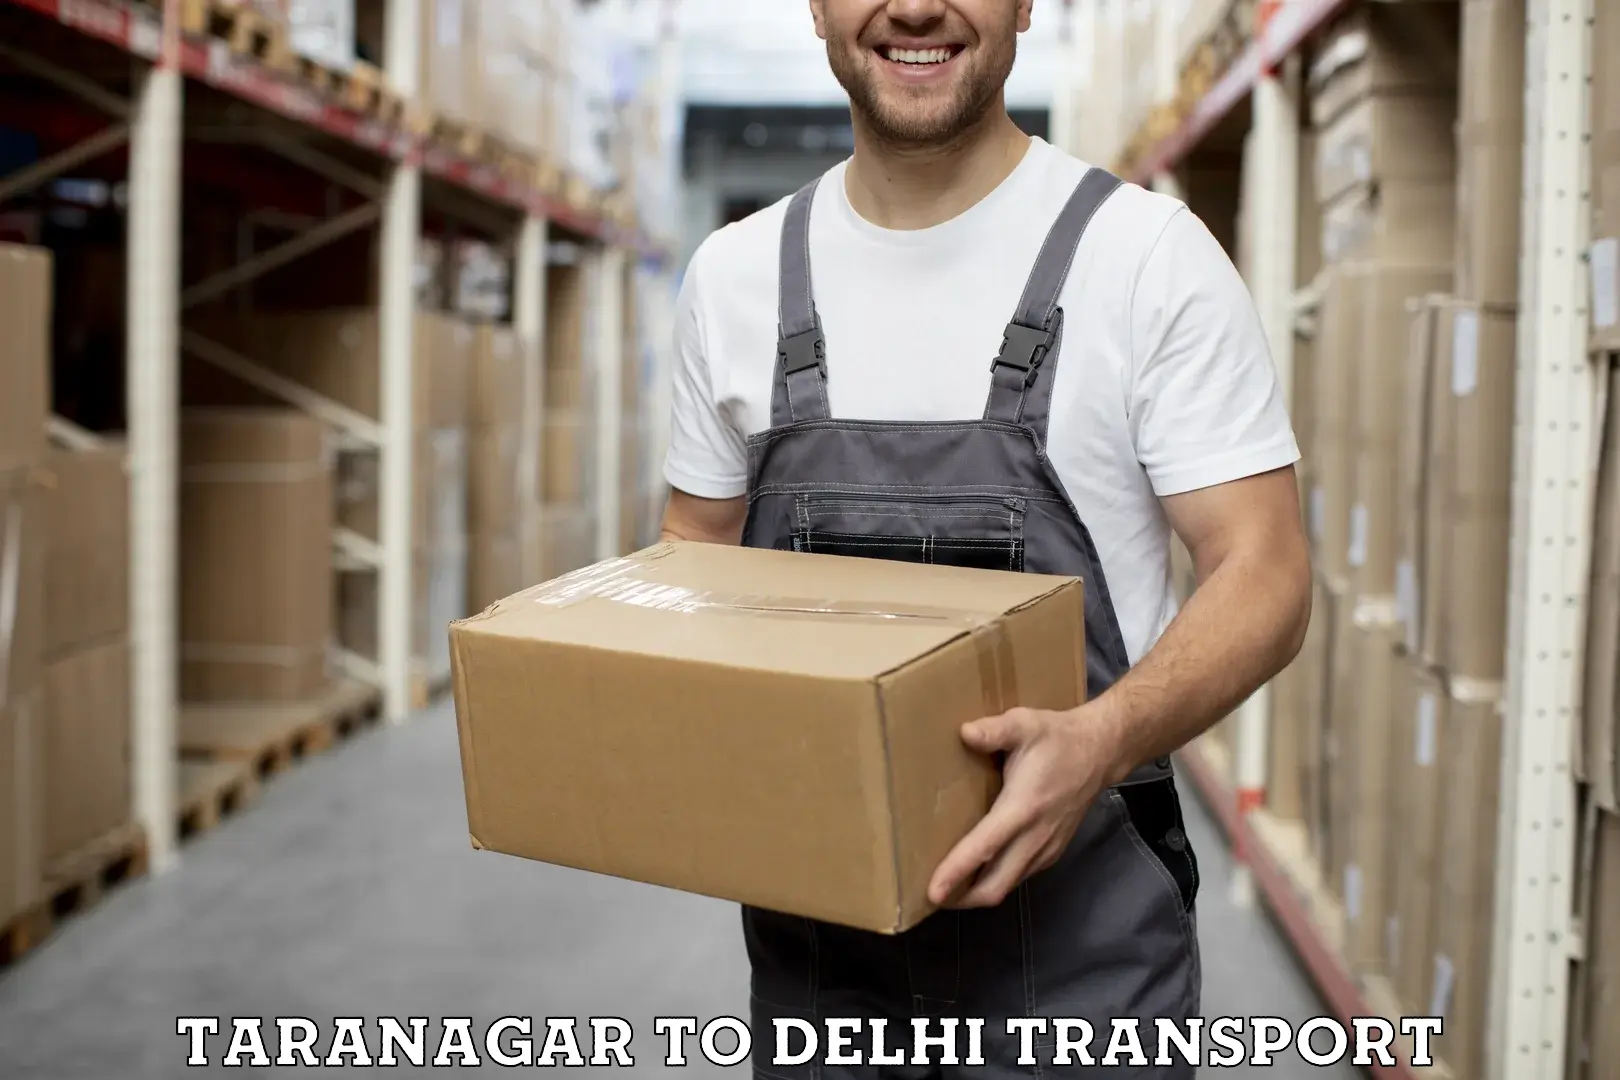 Road transport online services Taranagar to NIT Delhi